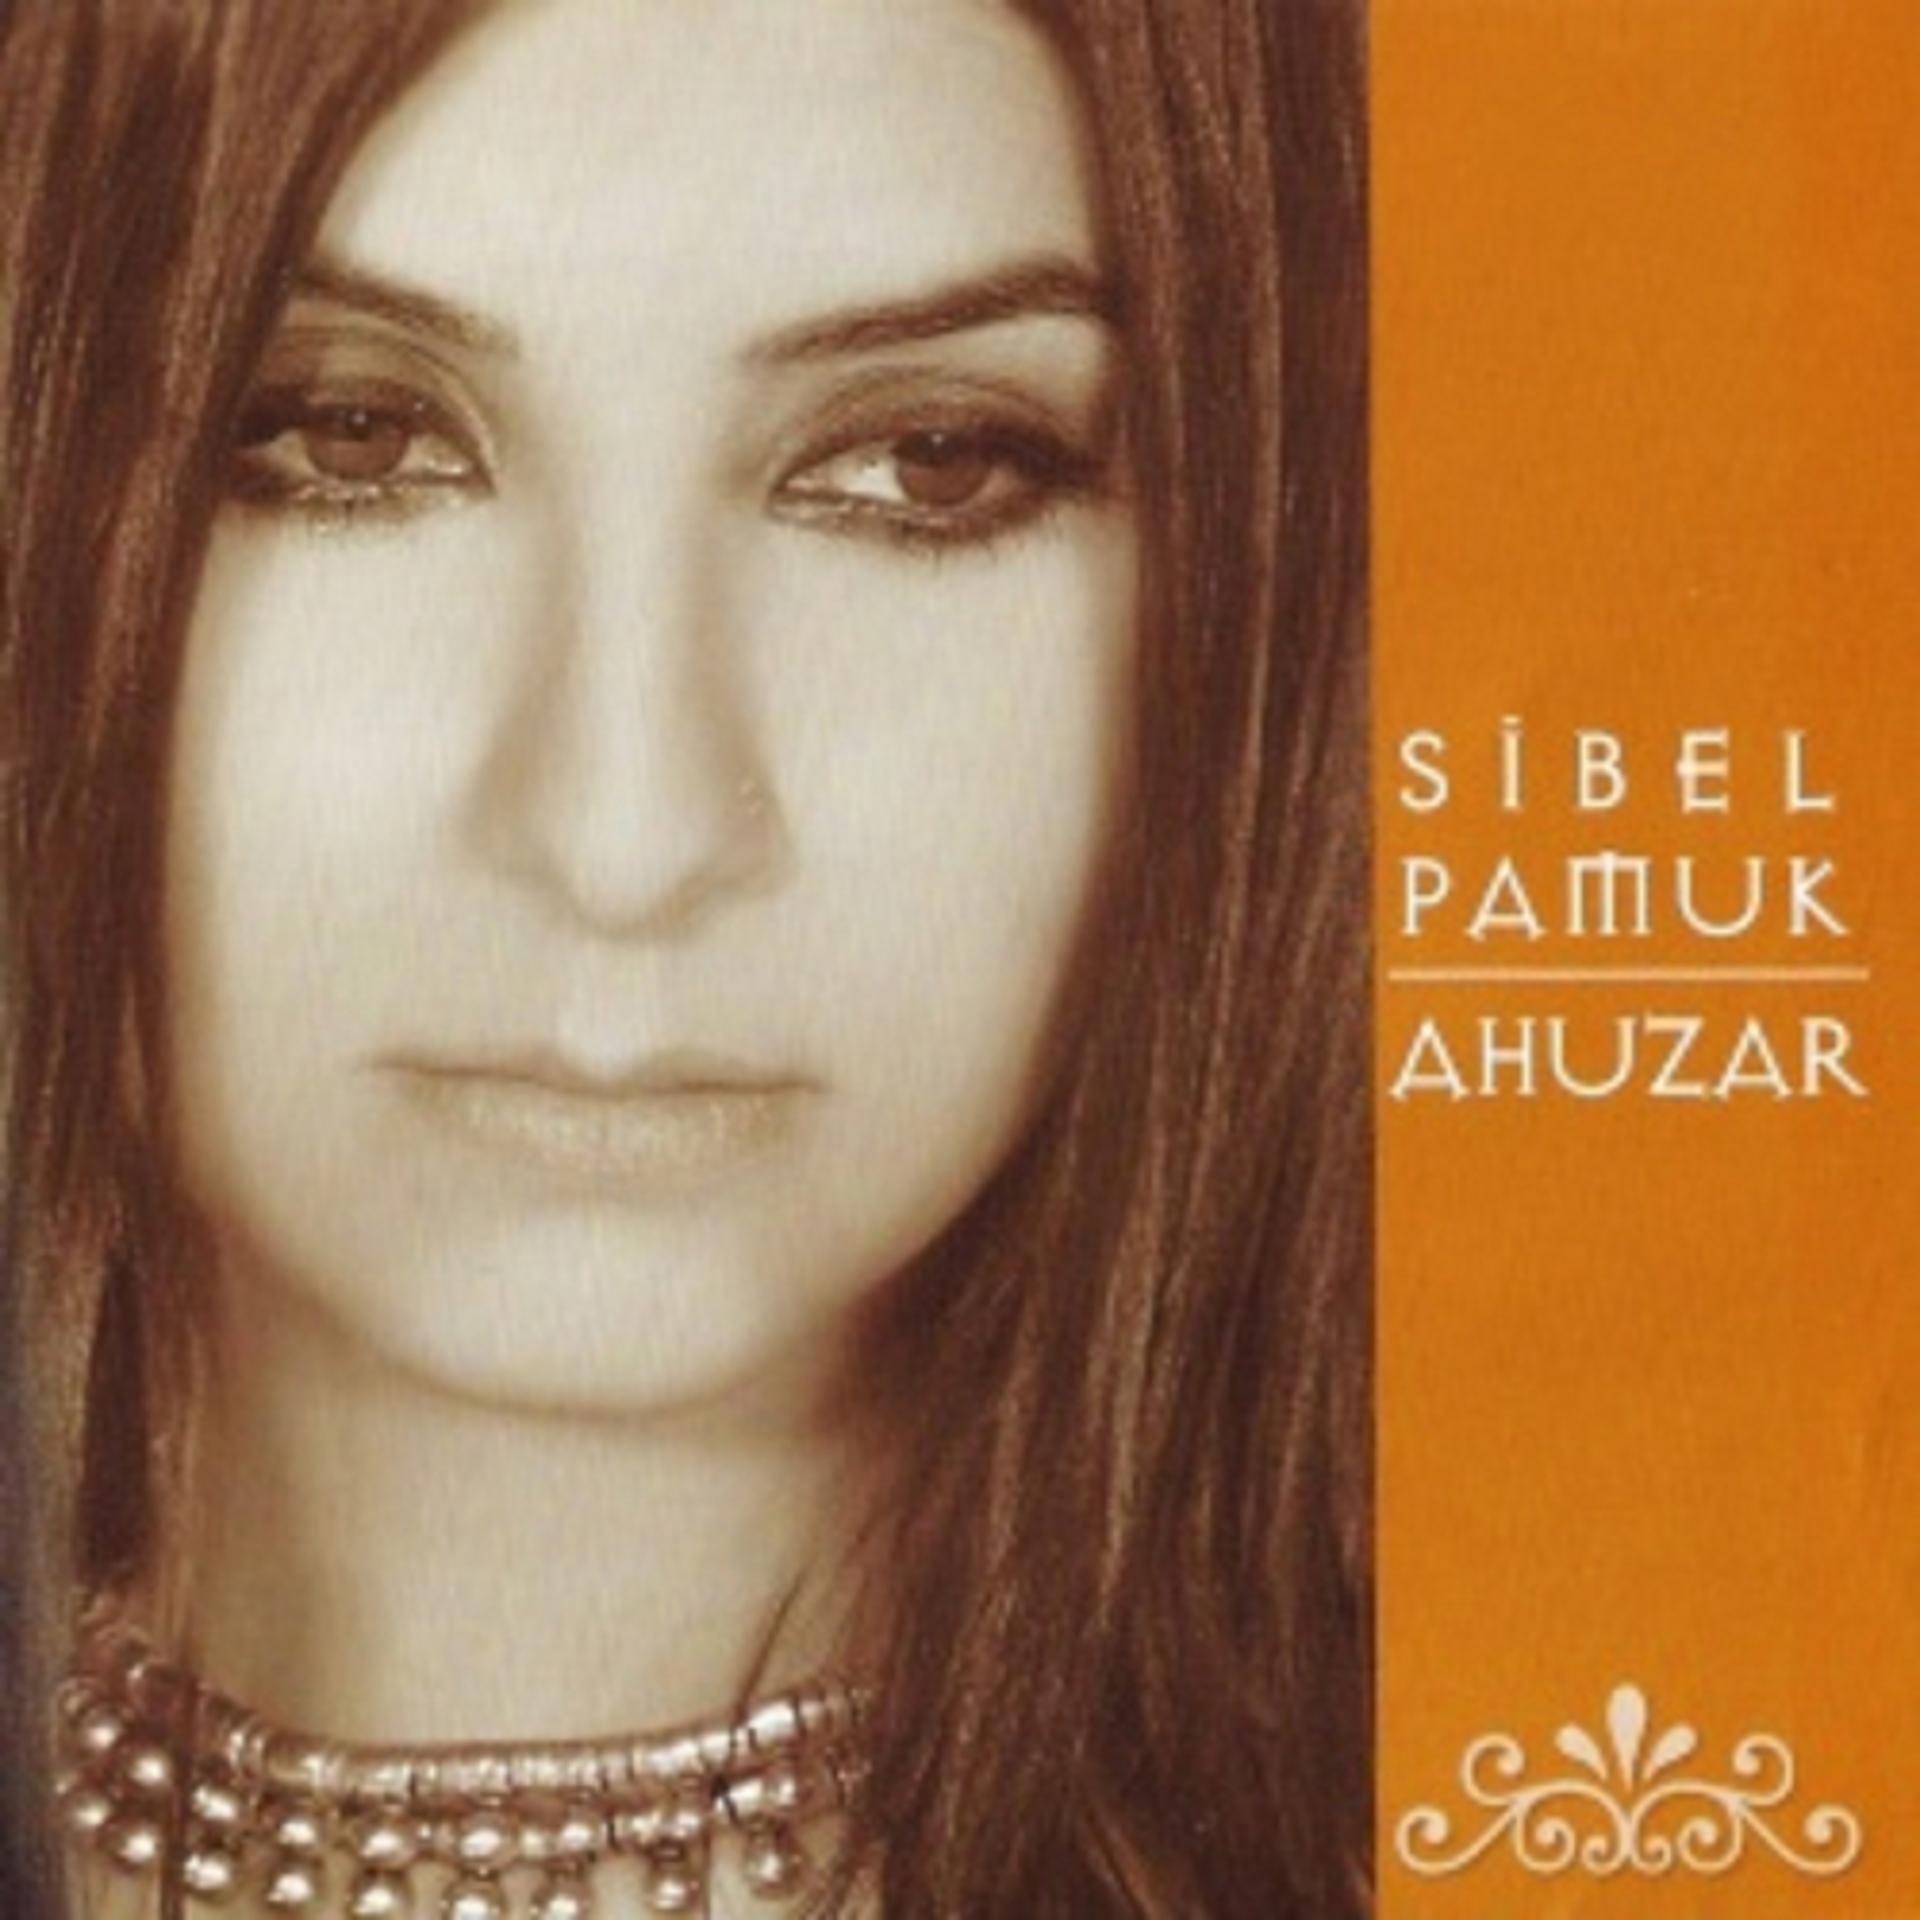 Постер к треку Sibel Pamuk - Herkesin Bir Derdi Var